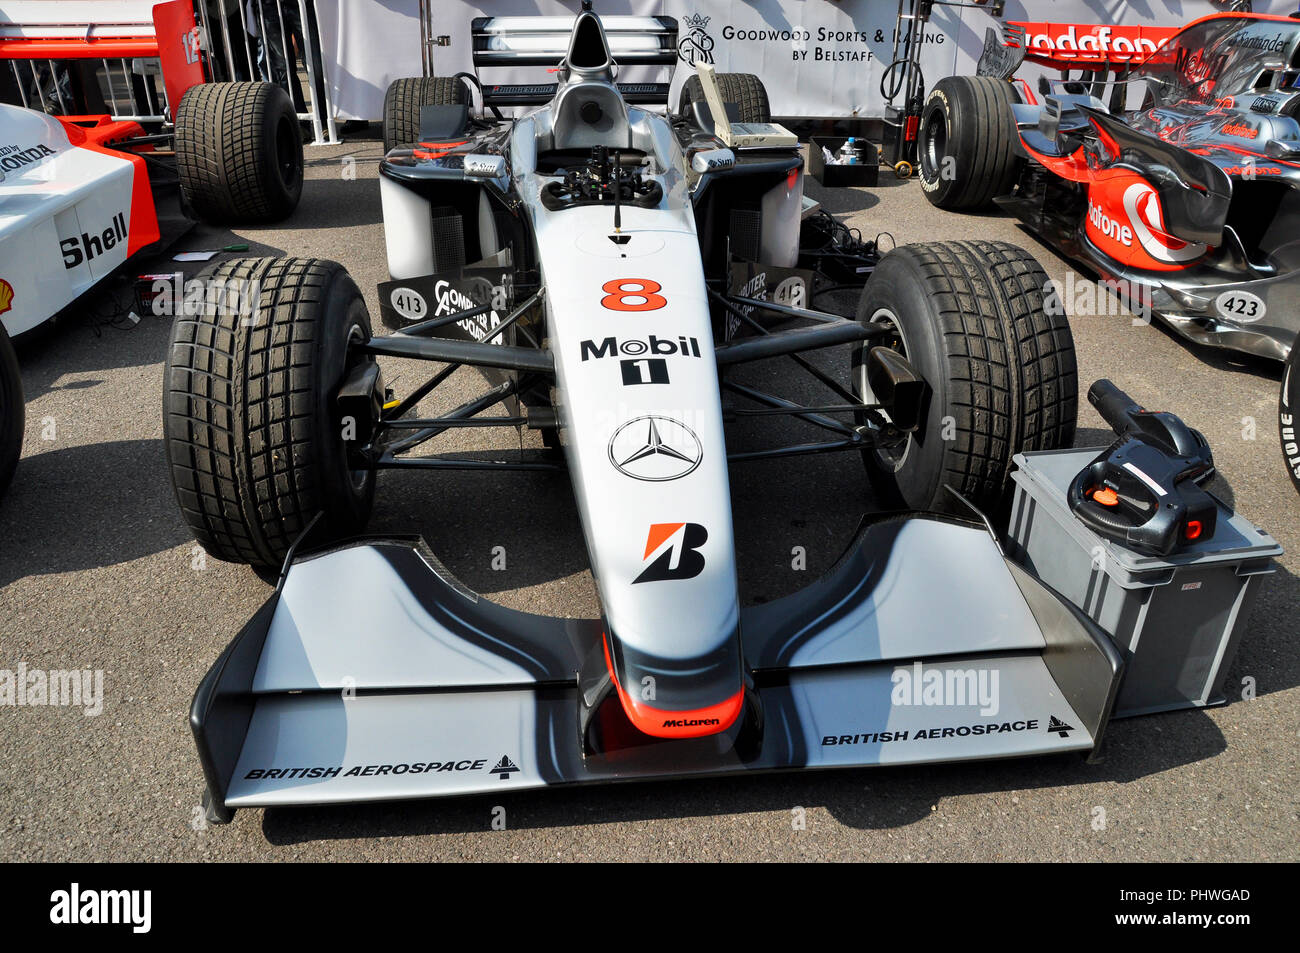 McLaren Mercedes MP4/13 Formel 1 Grand prix Rennwagen beim Goodwood Festival of Speed. Mika Häkkinens Rennwagen. McLaren F1-Autos in Boxenräumen Stockfoto